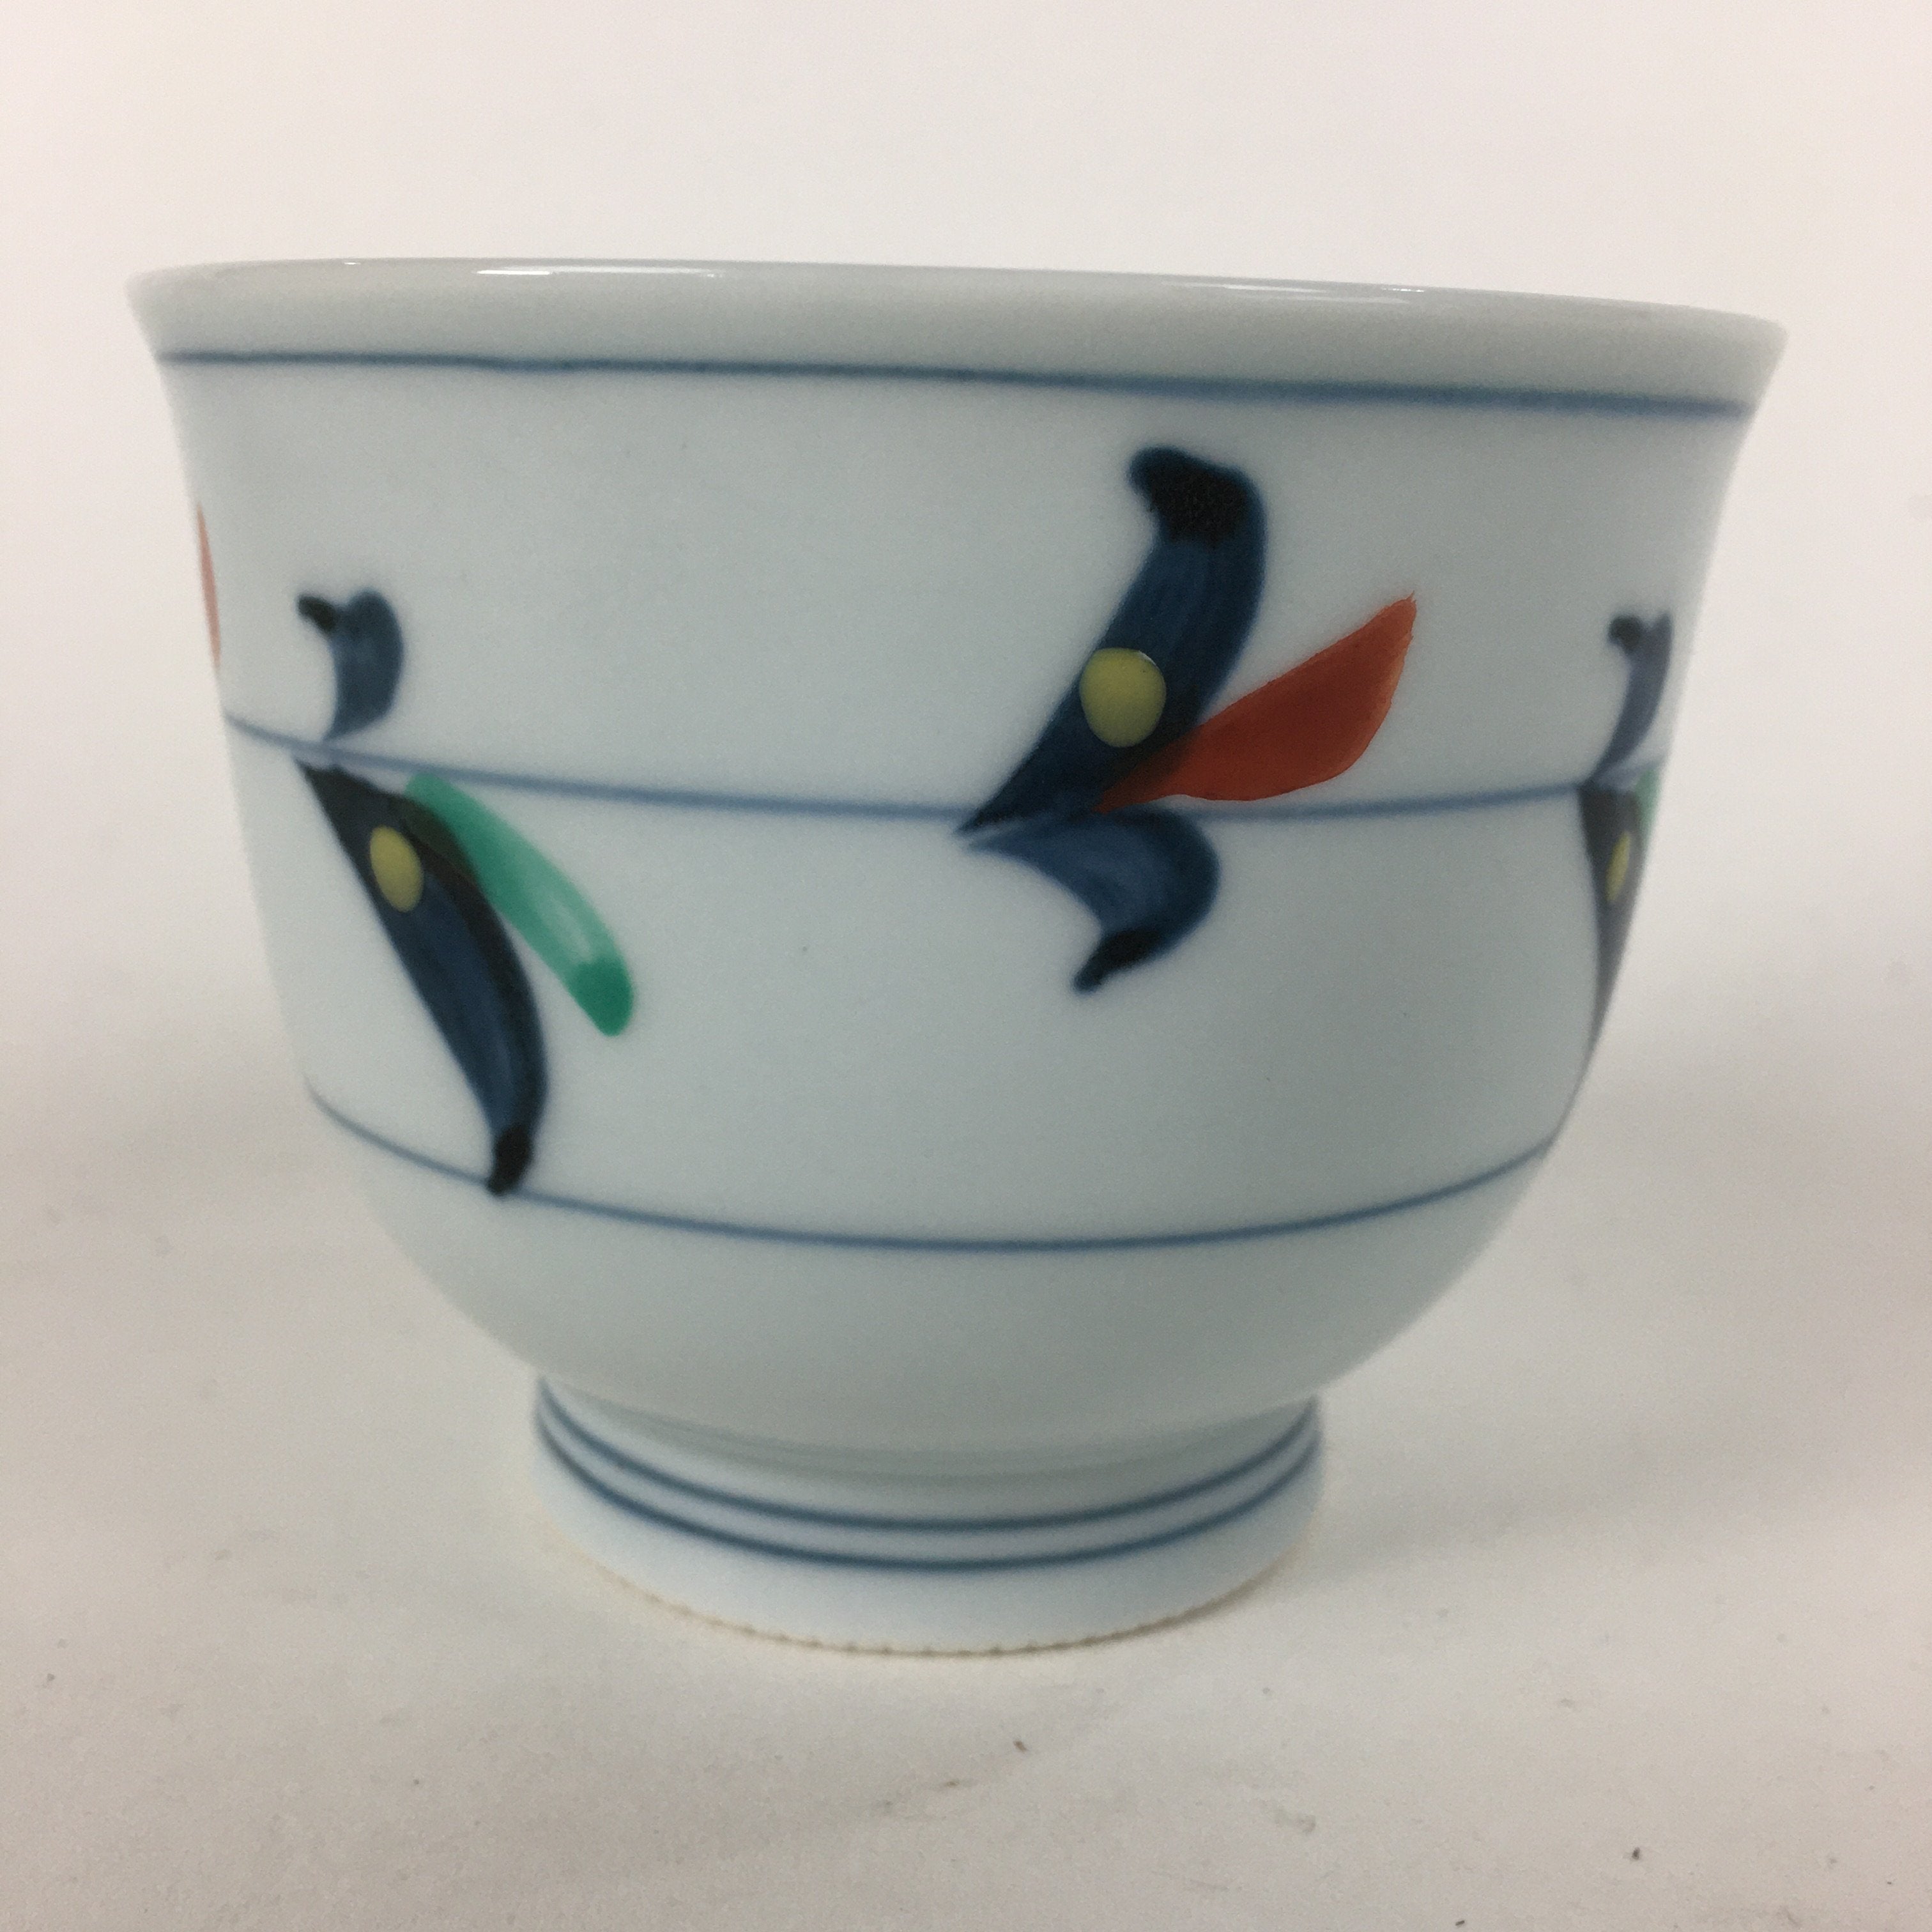 Japanese Porcelain Teacup Vtg Light Blue Small Bird Design Inside Sencha QT129